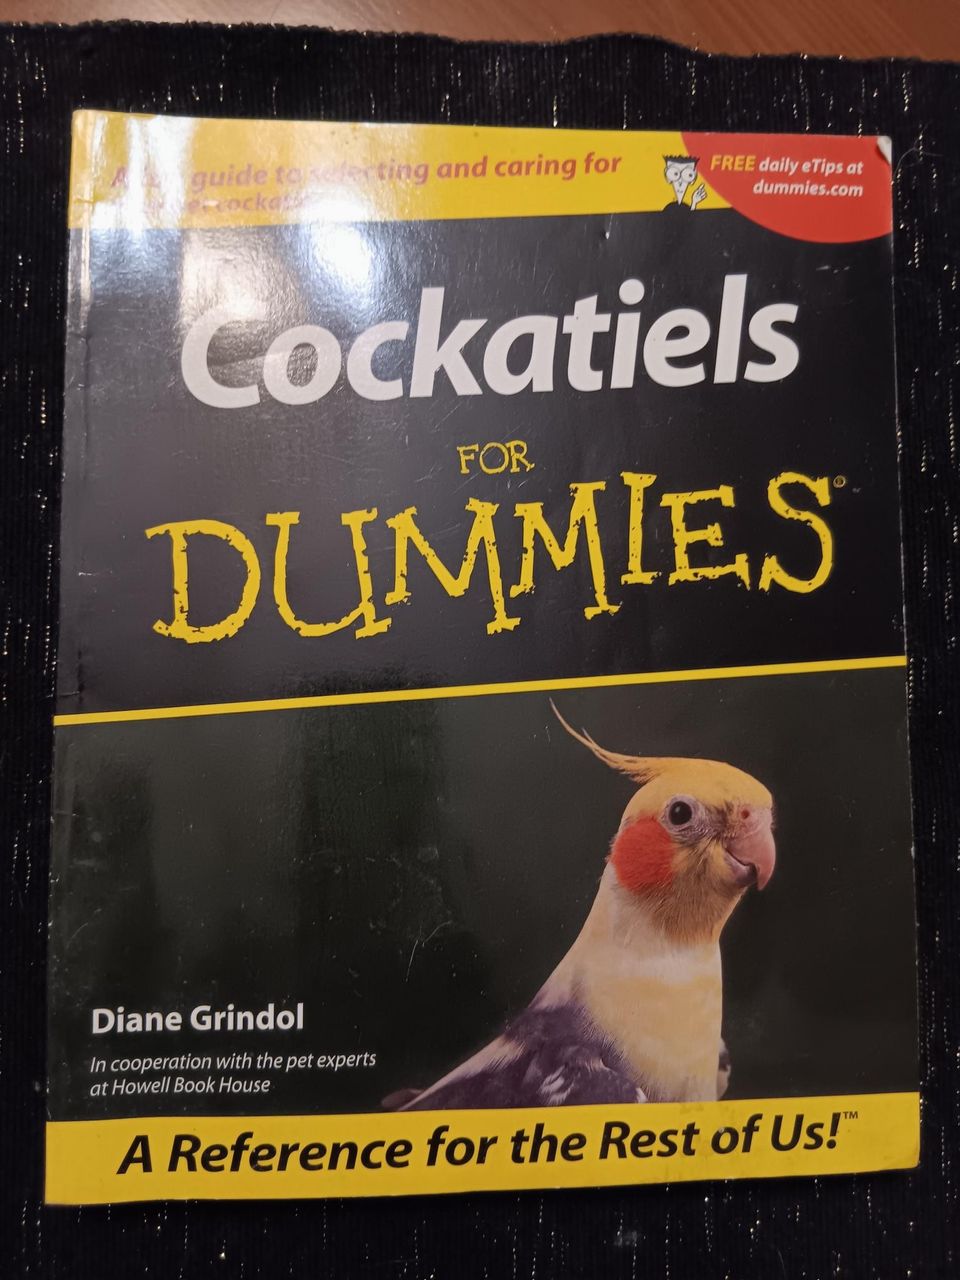 Cockatiels for dummies